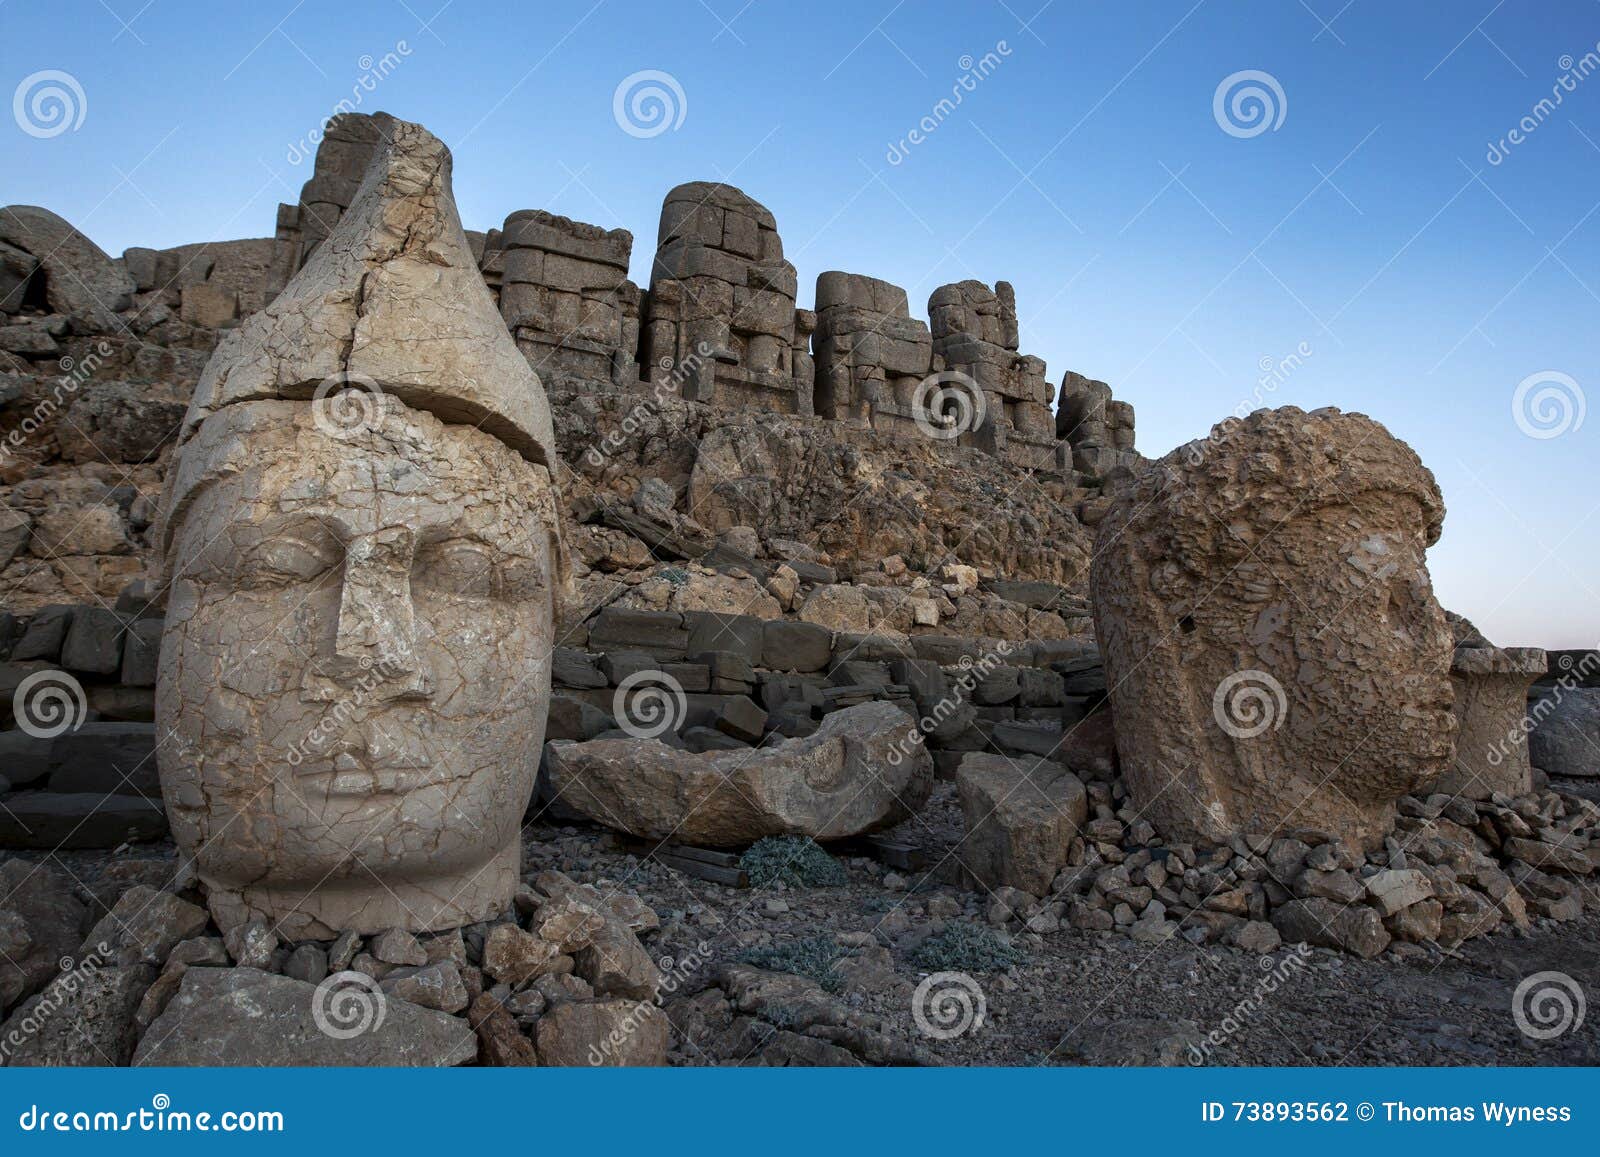 Siedzieć na wschodniej platformie Mt Nemrut w Turcja jest statuami opuszczać Apollo i bogini Tyche Commageme Mt Nemrut park narodowy lokalizuje w Taurus pasmie górskim 2150 metres w Turcja między Malatya północ i Kahta południe